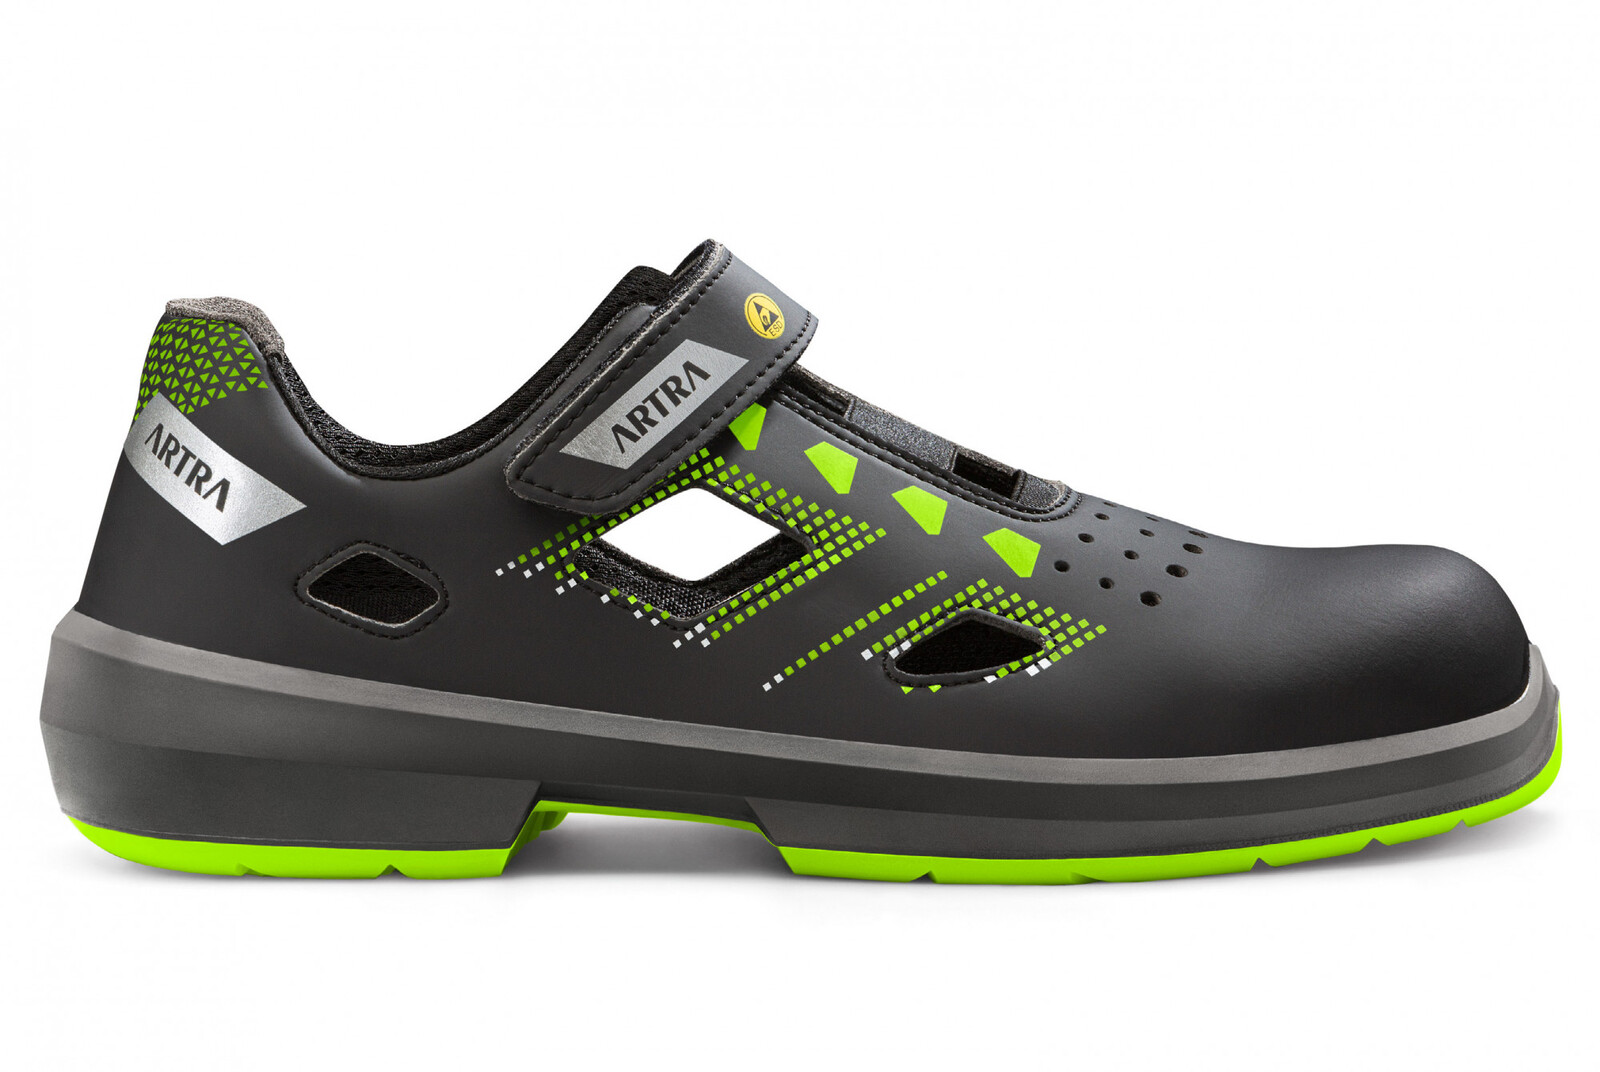 Bezpečnostné sandále Artra Arzo 805 678080 S1 SRC ESD MF - veľkosť: 38, farba: čierna/zelená